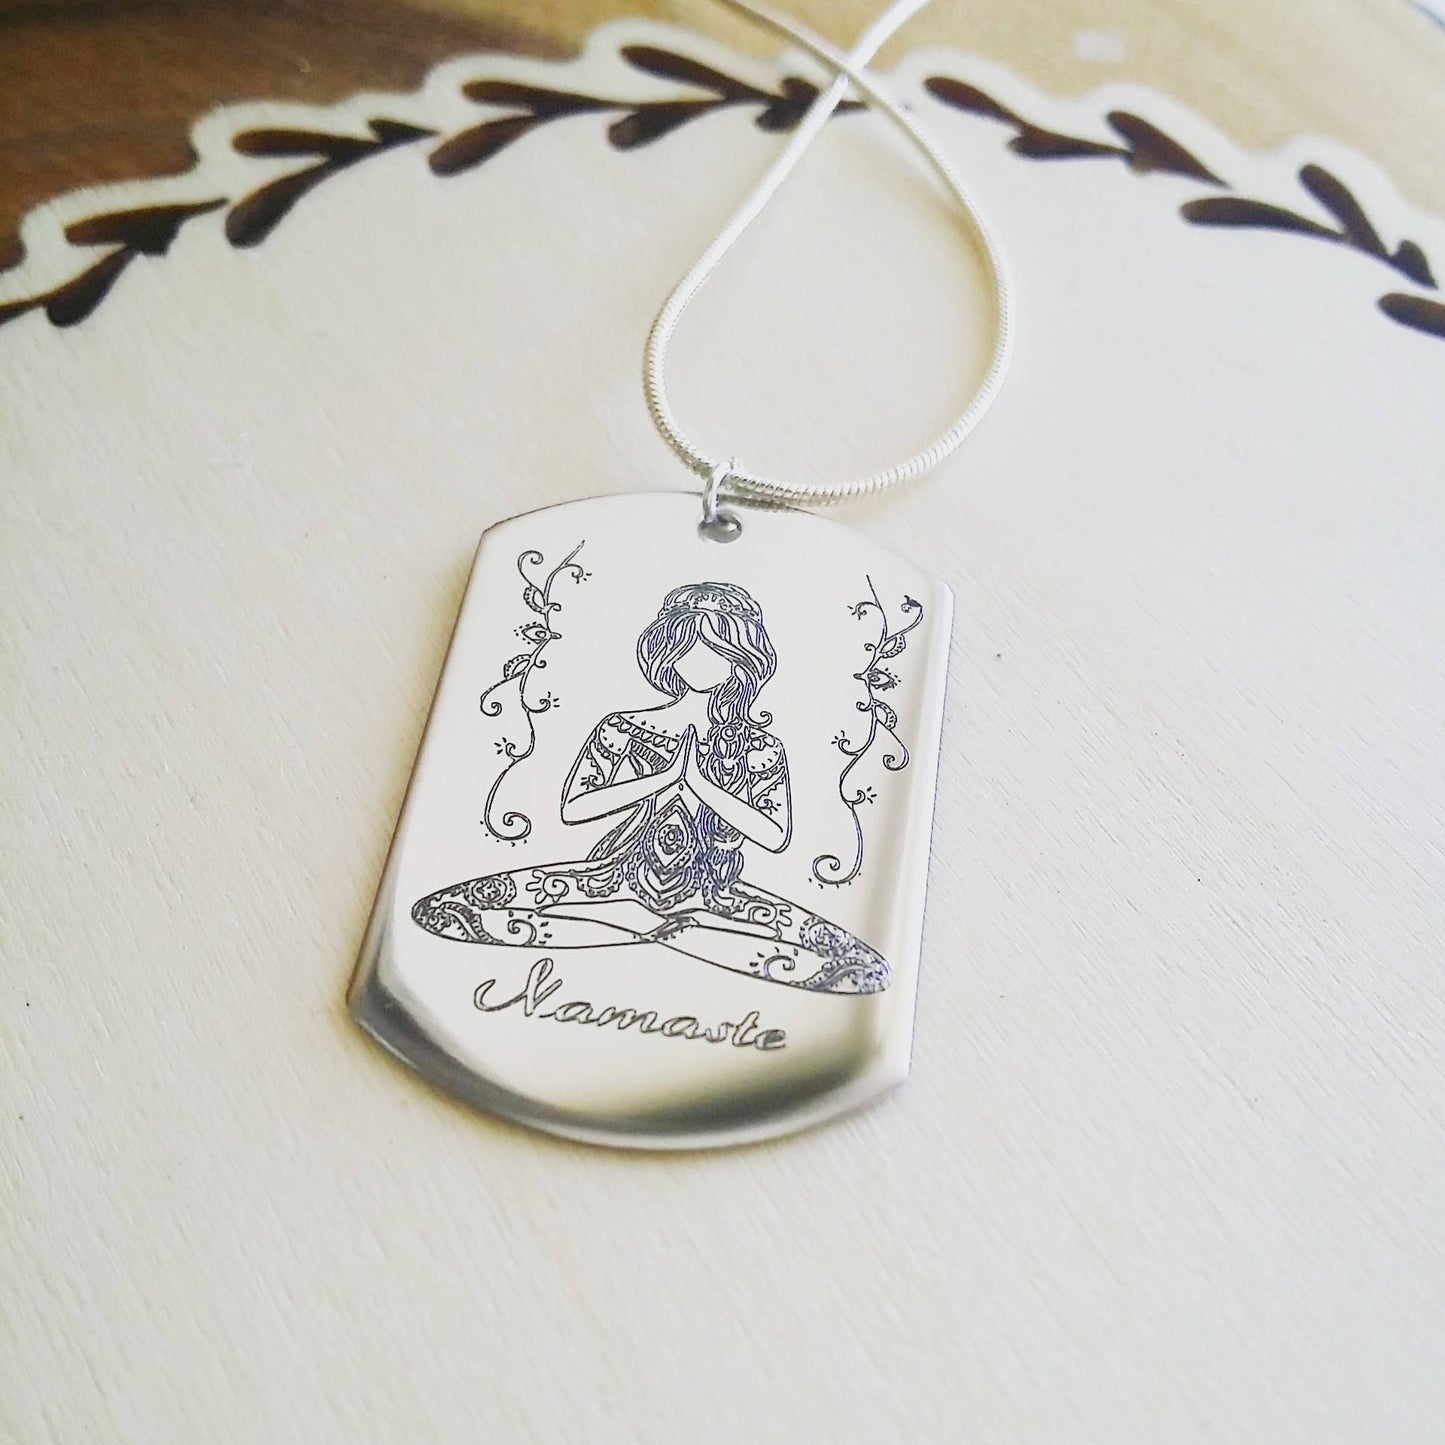 Collier Namaste, pose de yoga gravée sur collier en argent